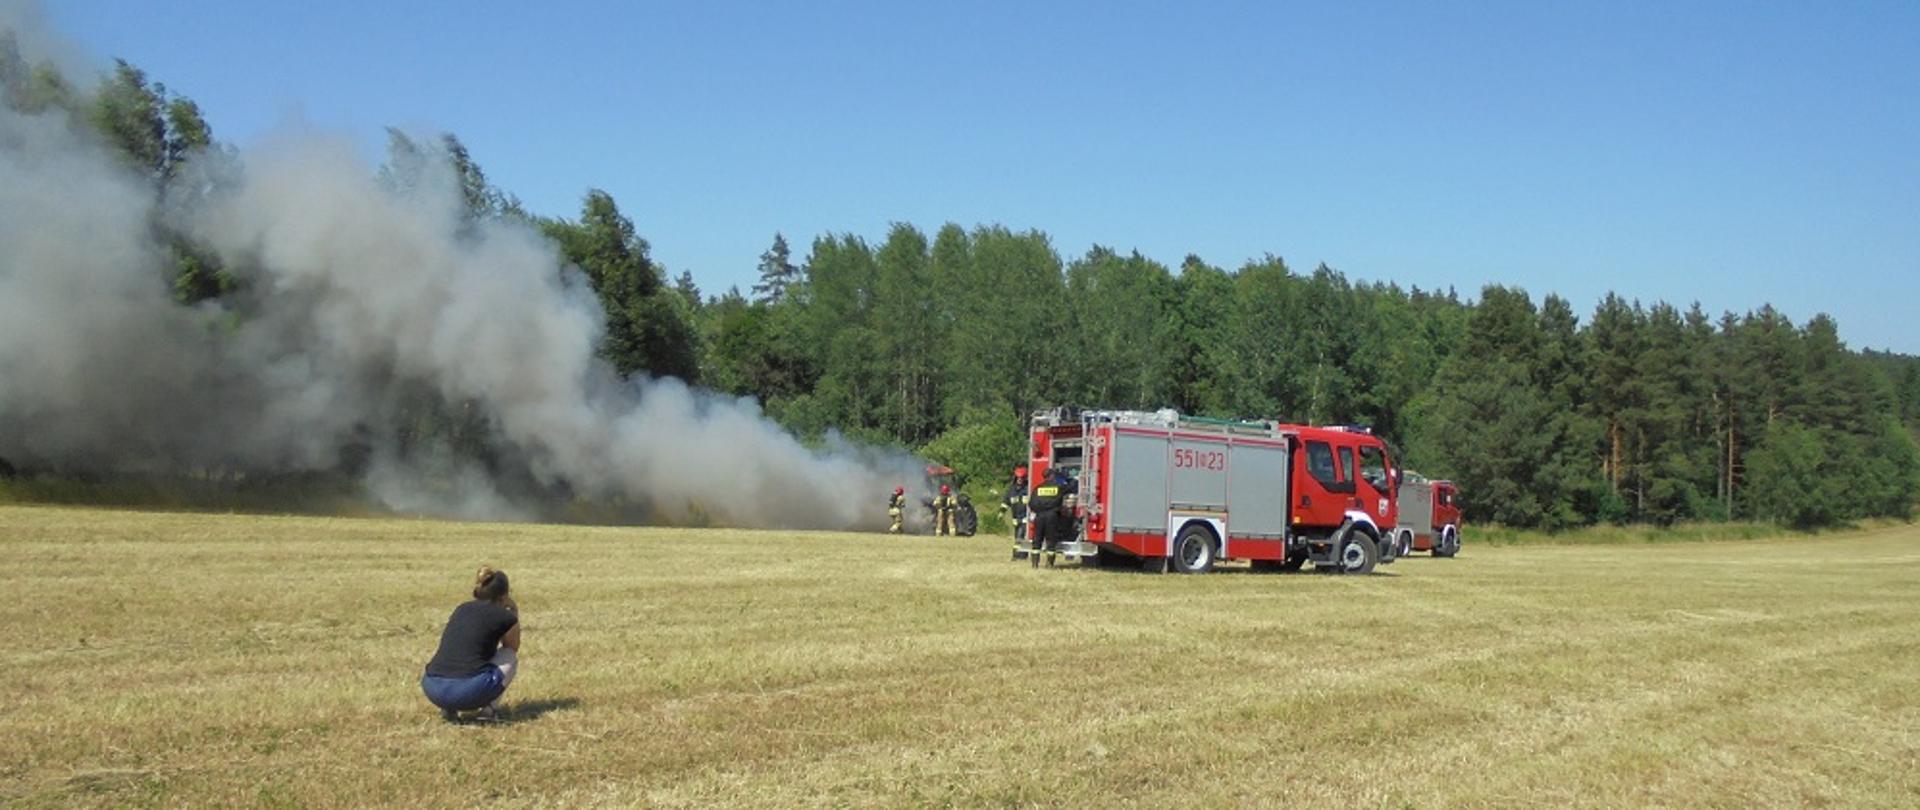 Poglądowe zdjęcie działań na polach. Zdjęcie z działań ratowniczo-gaśniczych w miejscowości Lemany. Strażacy gaszą ciągnik rolniczy.